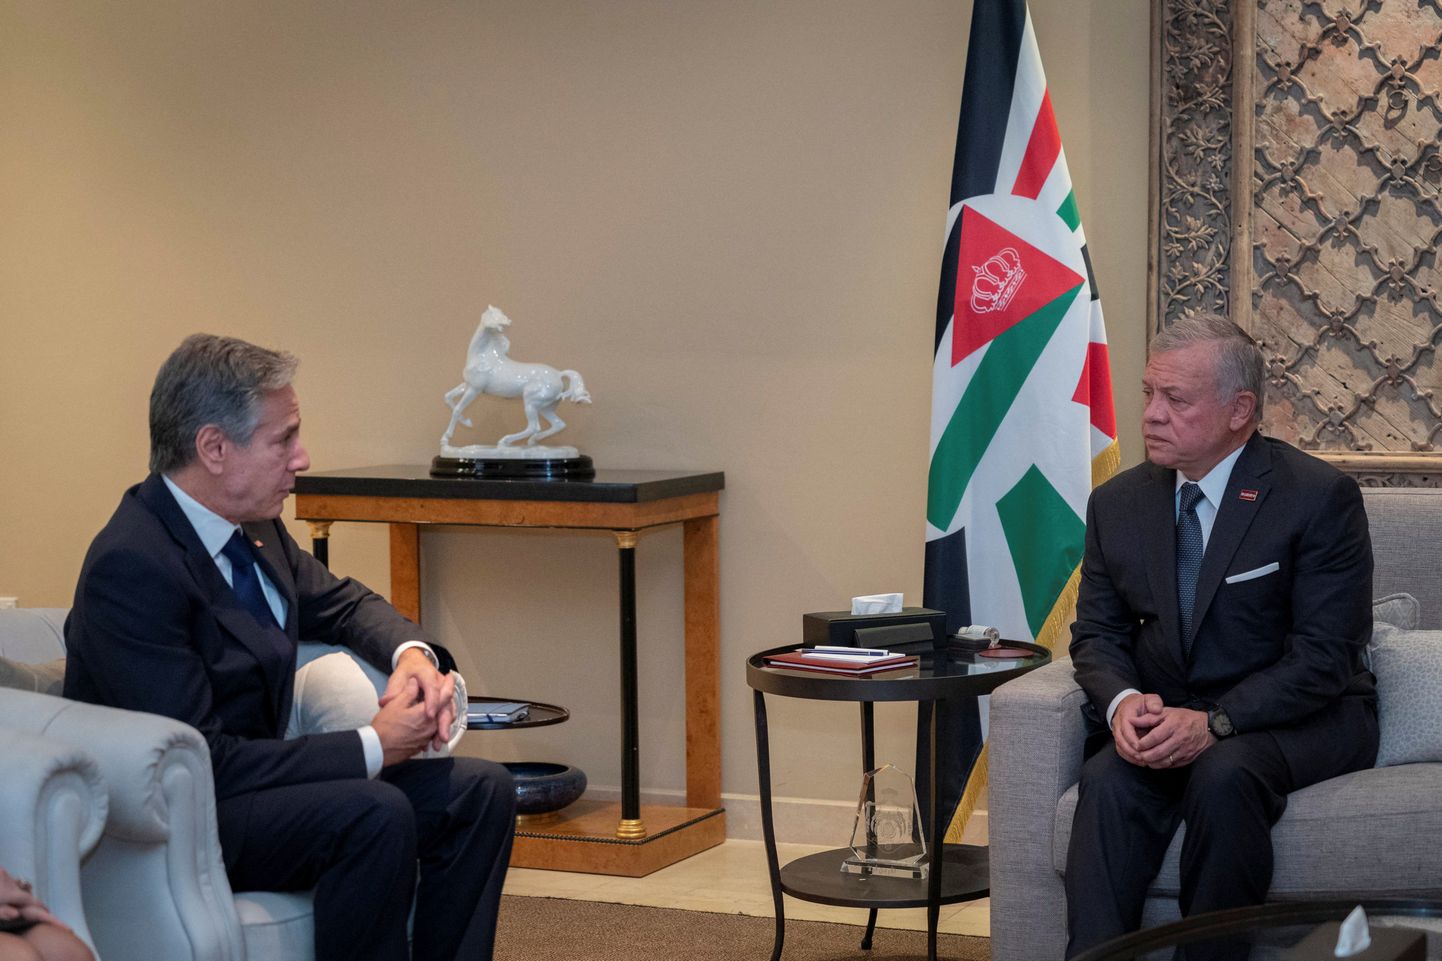 Jordaania kuningas Abdullah II kohtus USA välisministri Antony Blinkeniga.